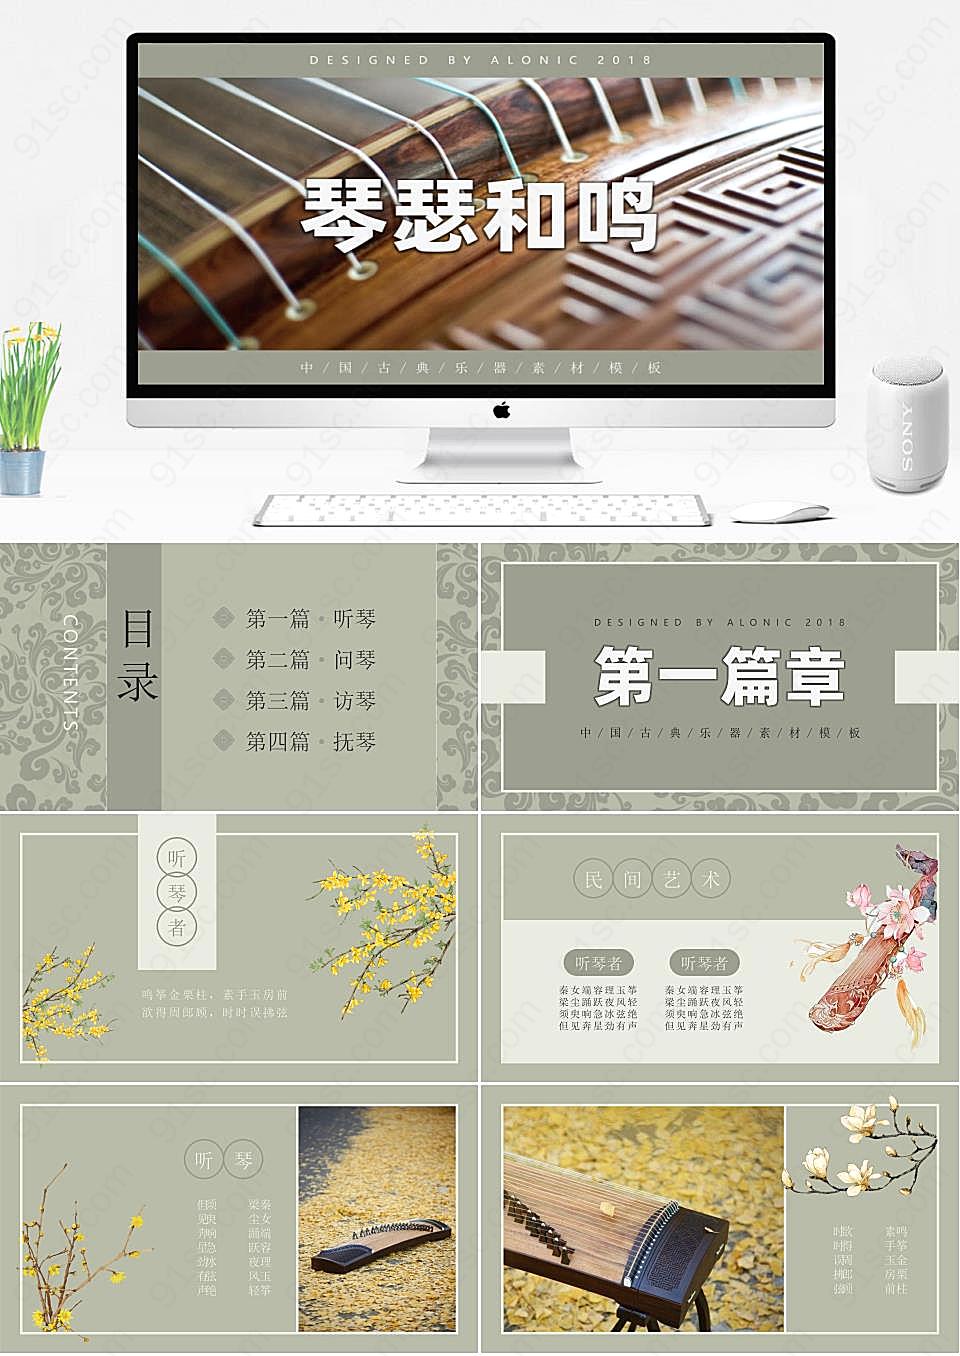 中国元素与现代设计的完美结合琴瑟和鸣教学课件PPT模板下载